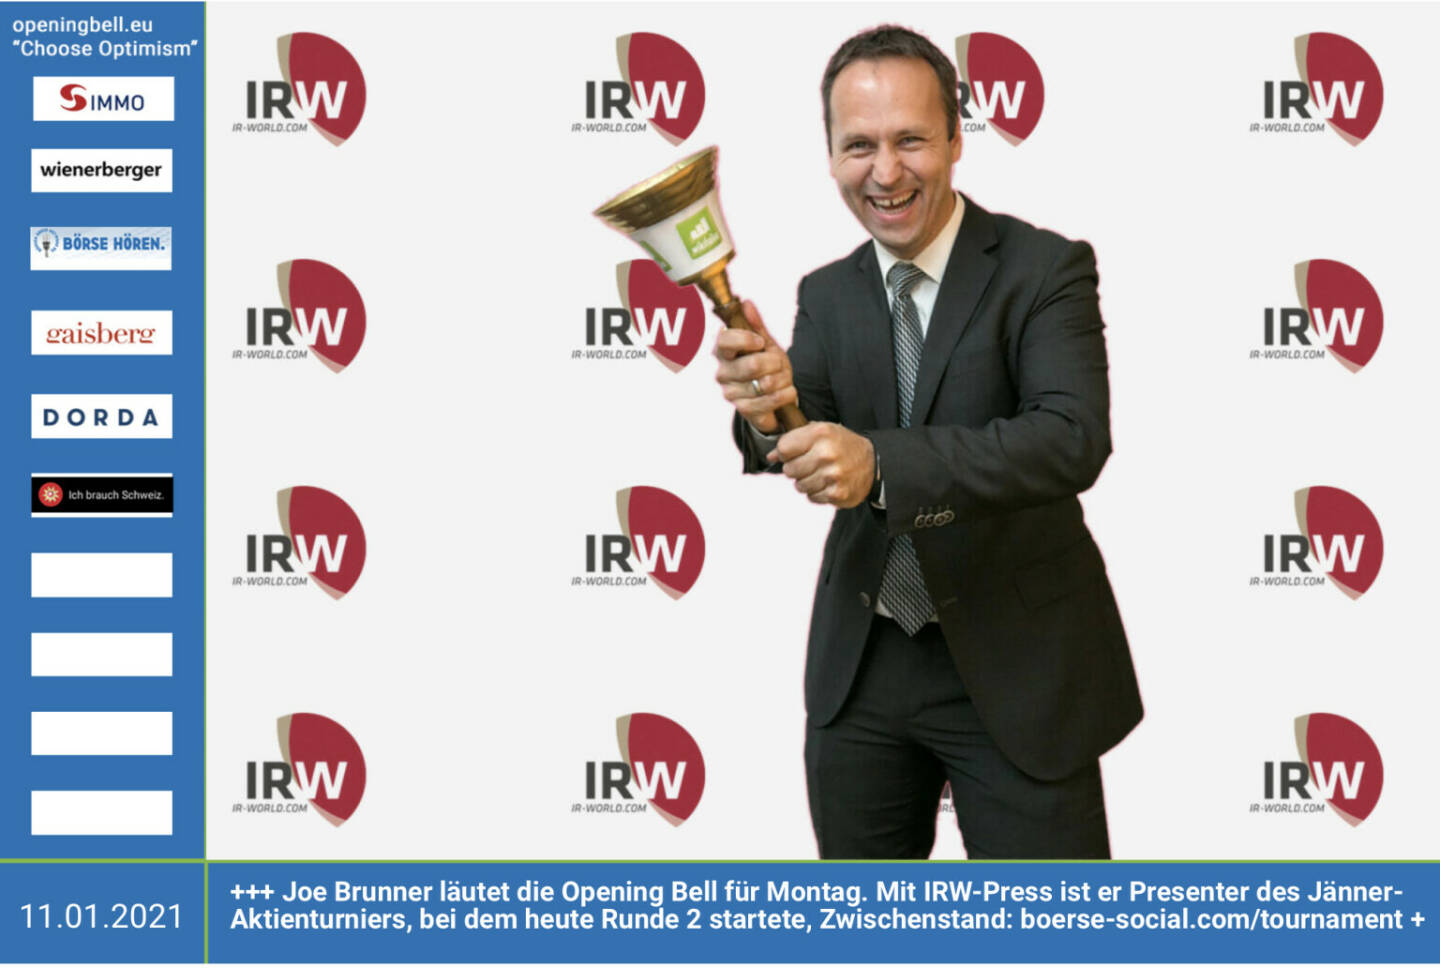 11.1.: Joe Brunner läutet die Opening Bell für Montag. Mit IRW-Press ist er Presenter des Jänner-Aktienturniers, bei dem heute Runde 2 startete, Zwischenstand: http://www.boerse-social.com/tournament https://www.irw-press.com/de/ 